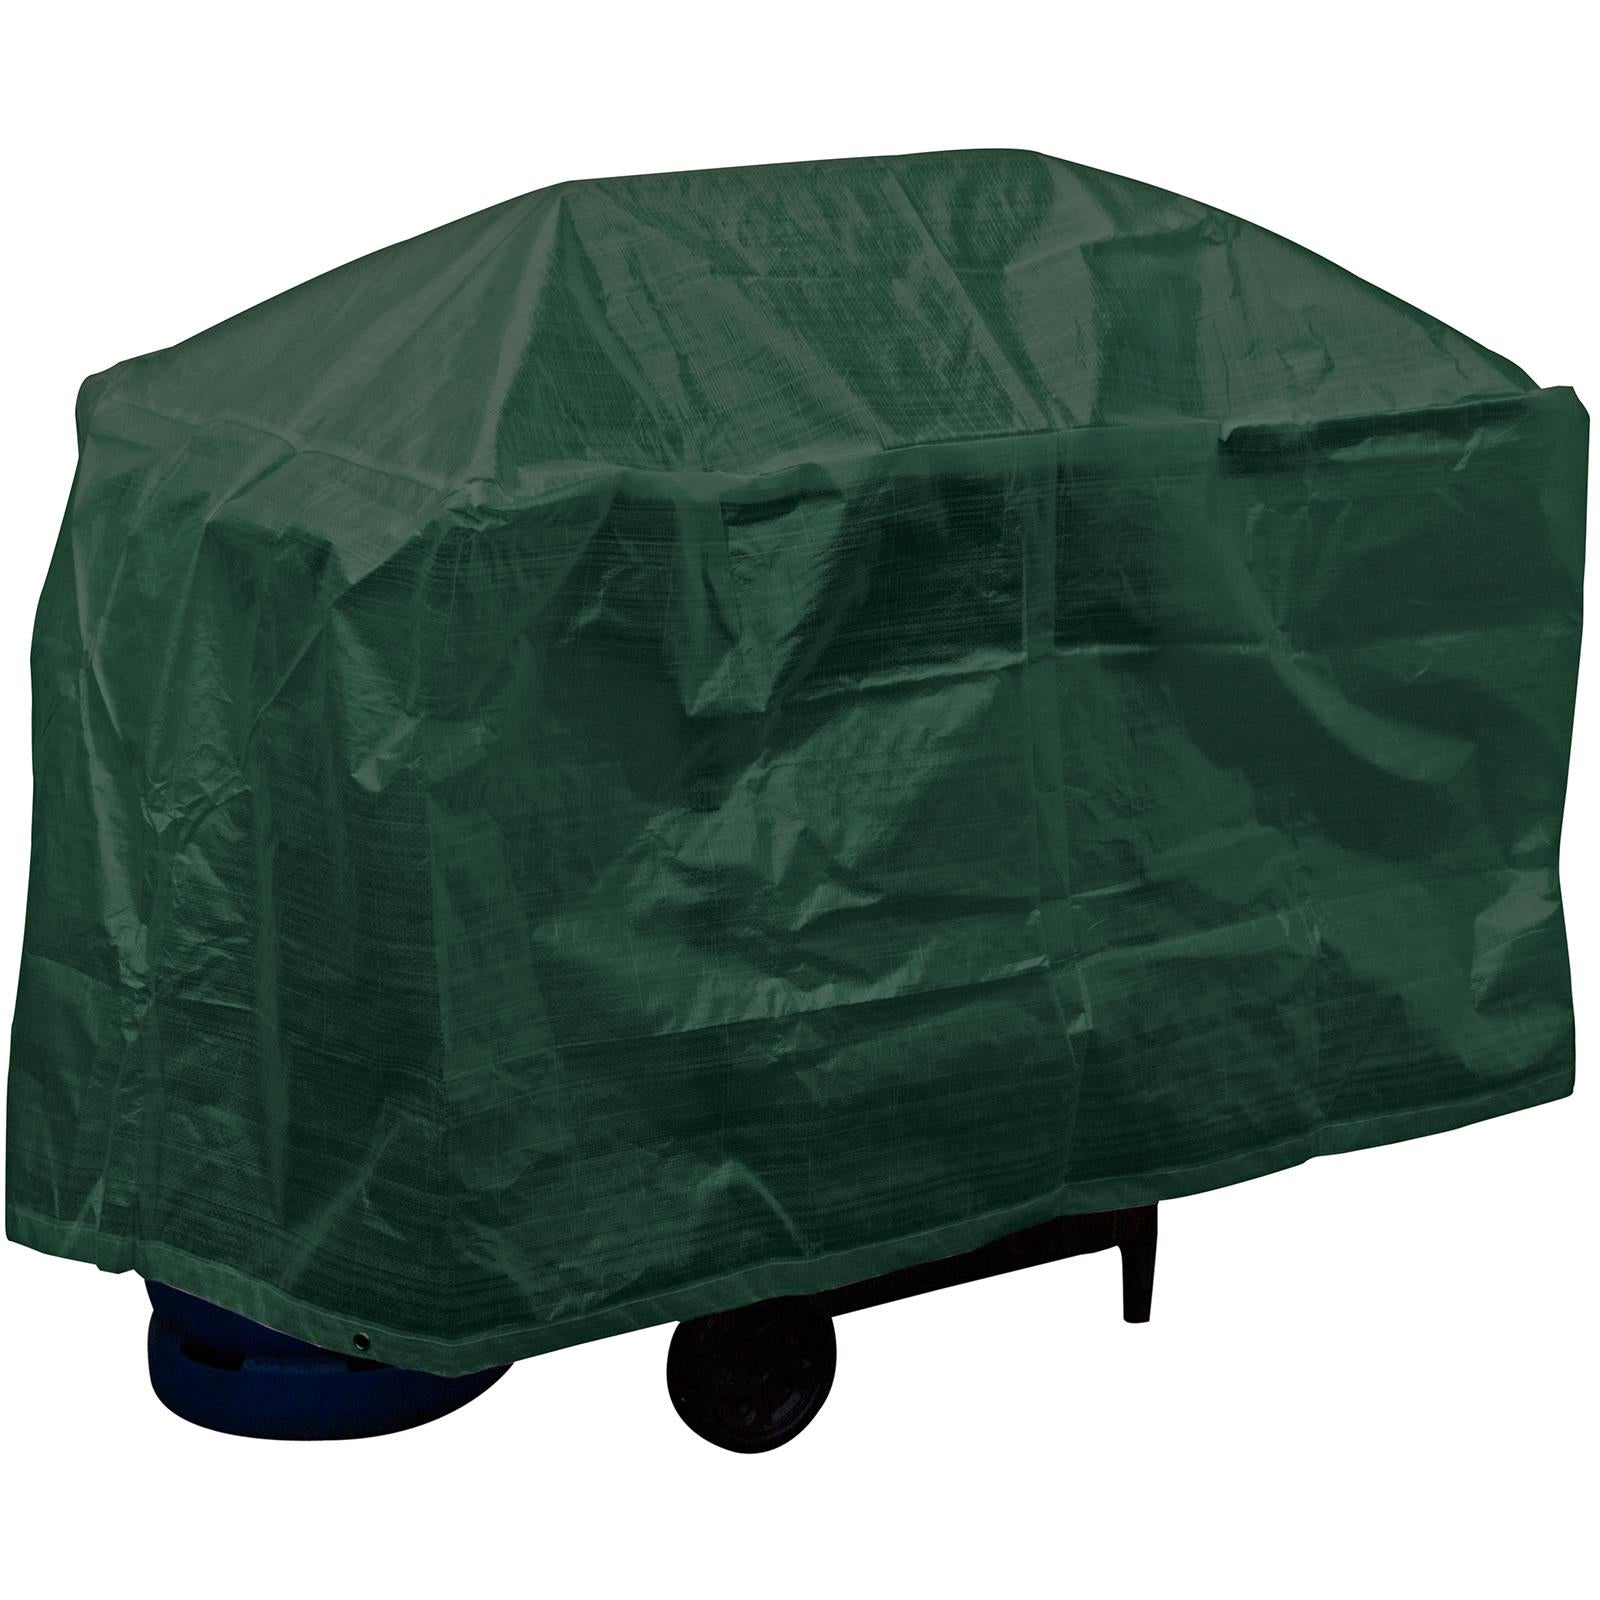 Silverline BBQ Cover 1220 x 710 x 710mm Waterproof Garden Tear-Resistant